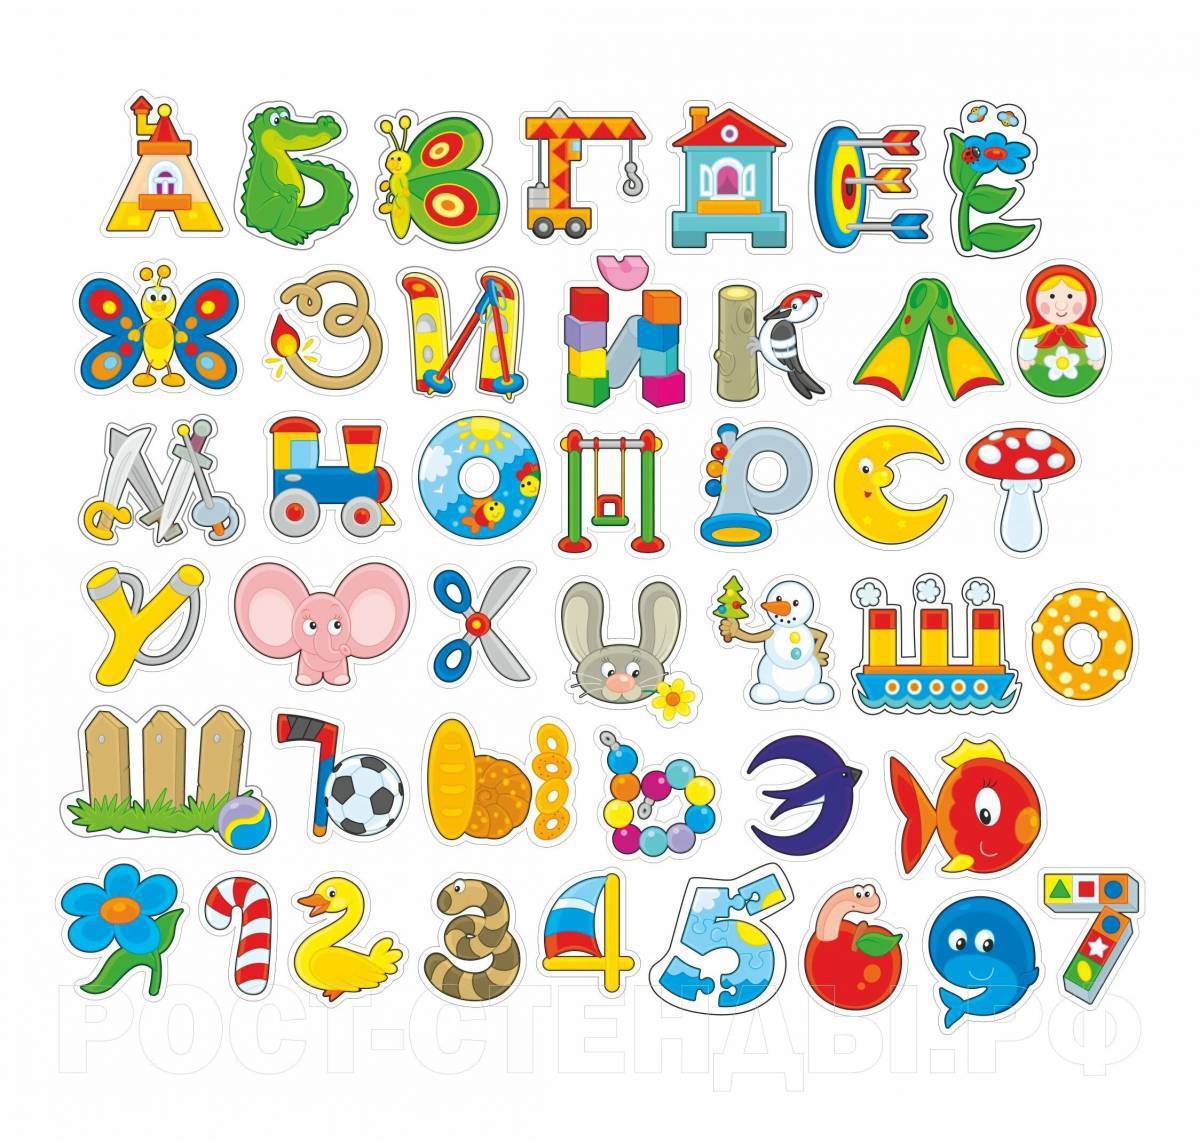 алфавит русский фото по буквам для детей